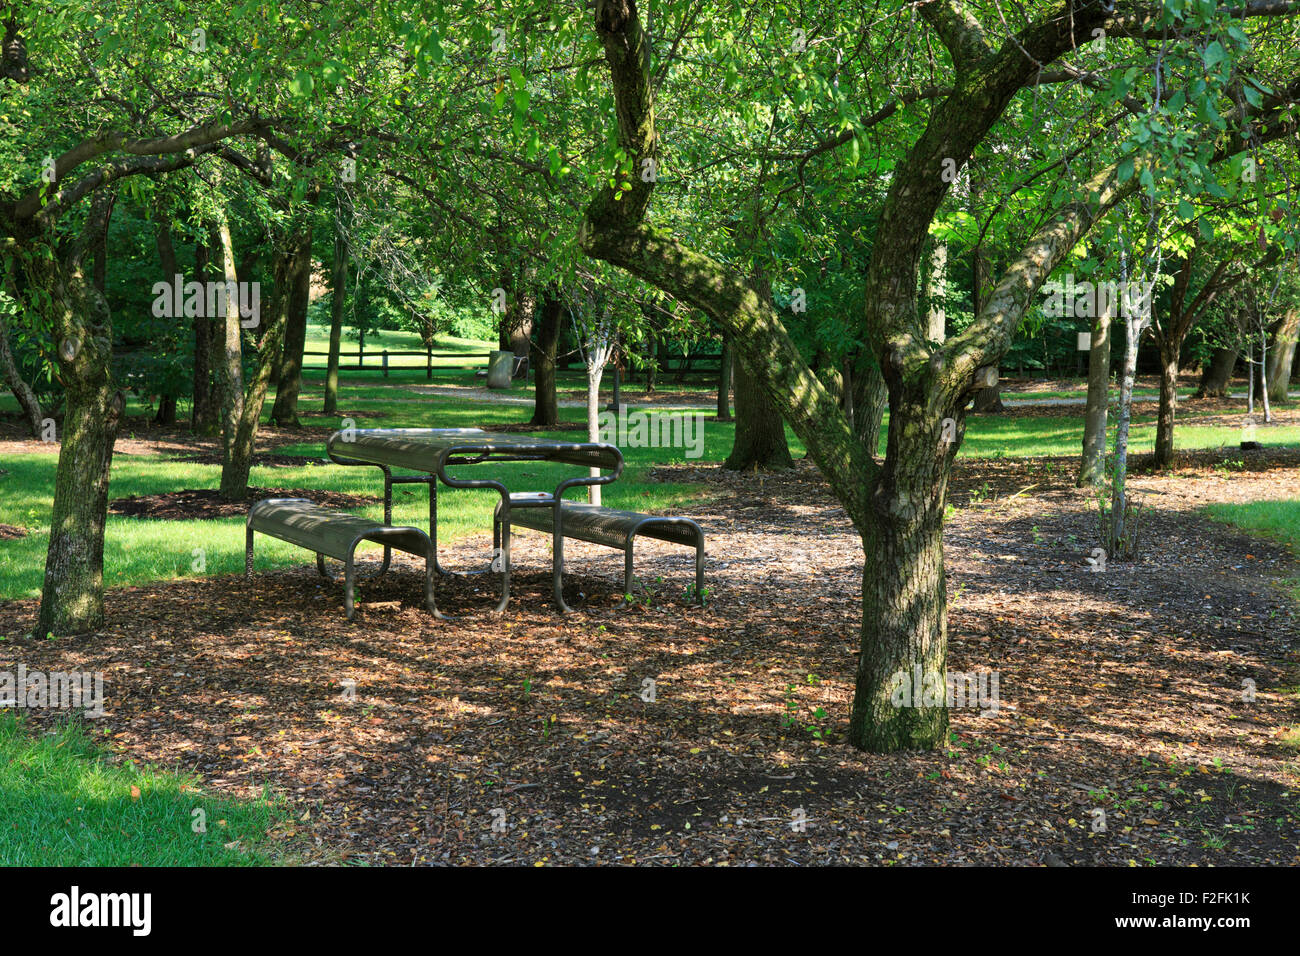 Picnic bench in park Stock Photo